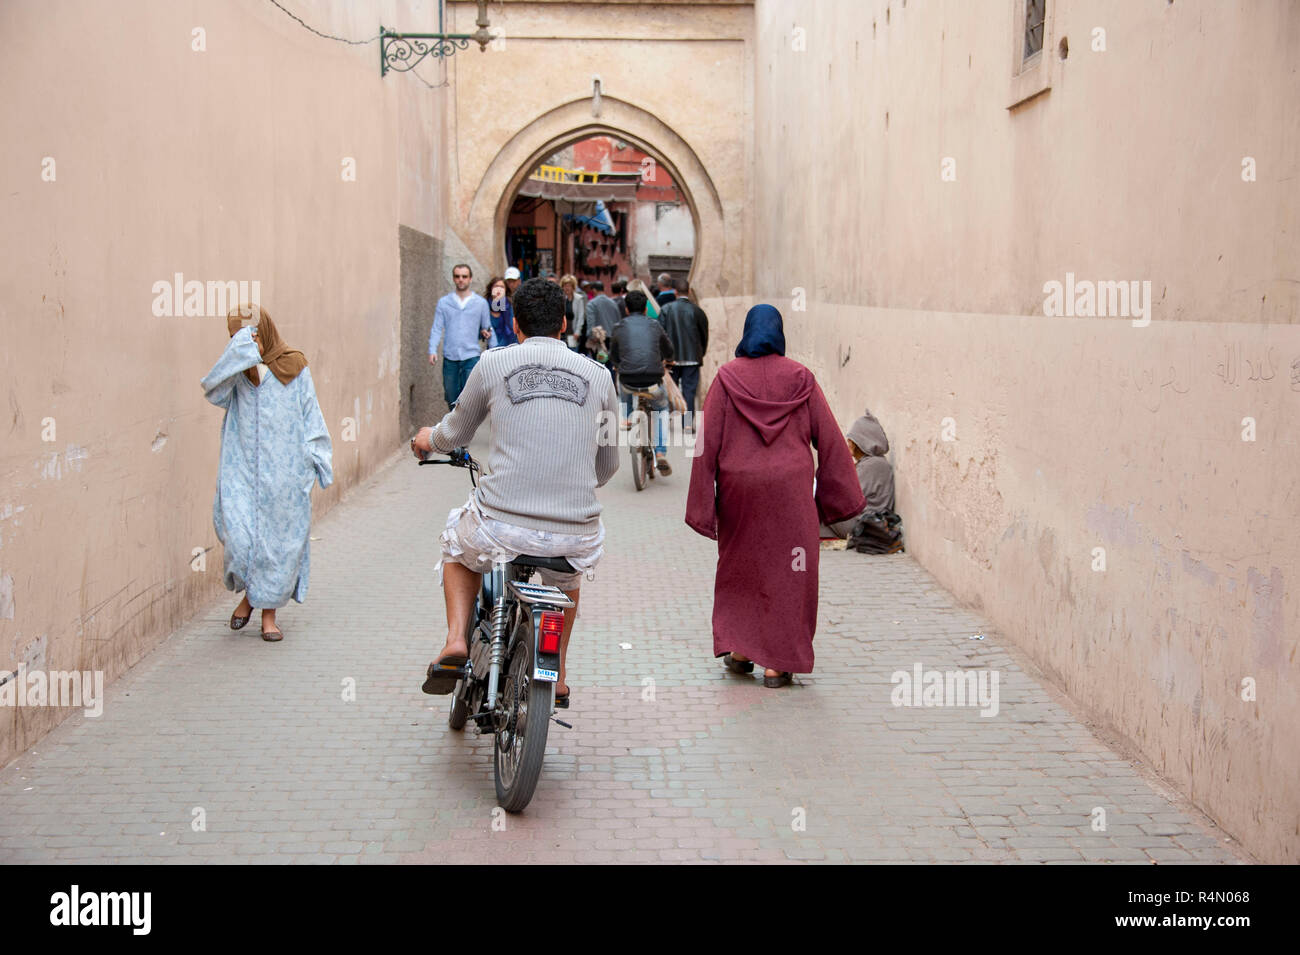 18-04-11. Marrakech, Marocco. Scena di strada nella medina, con una tessitura di scooter tra i passeggeri. Foto © Simon Grosset / Q Fotografia Foto Stock